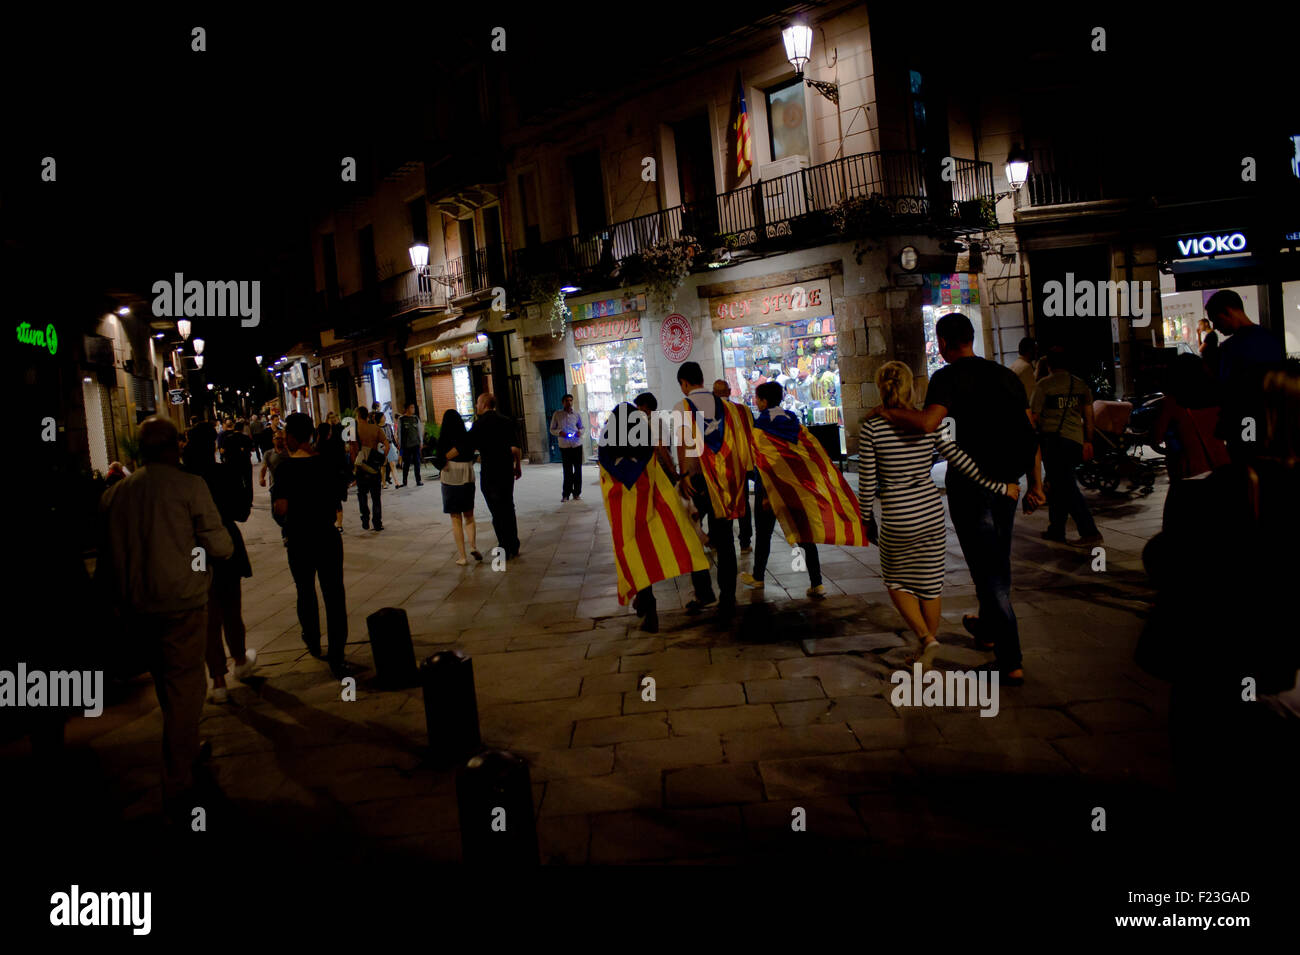 Barcelone, Catalogne, Espagne. 10 Sep, 2015. Un groupe de personnes portant des estelades promenades (drapeau indépendantiste catalan) par les rues de Barcelone où plusieurs pour l'indépendance a eu lieu la nuit avant la célébration de la fête nationale catalane le 10 septembre 2015. Les derniers sondages donnent une majorité absolue à l'indépendance (parties Junts Pel Si et CUP) qui seront au cours des élections régionales catalanes le 27 septembre. © Jordi Boixareu/ZUMA/Alamy Fil Live News Banque D'Images